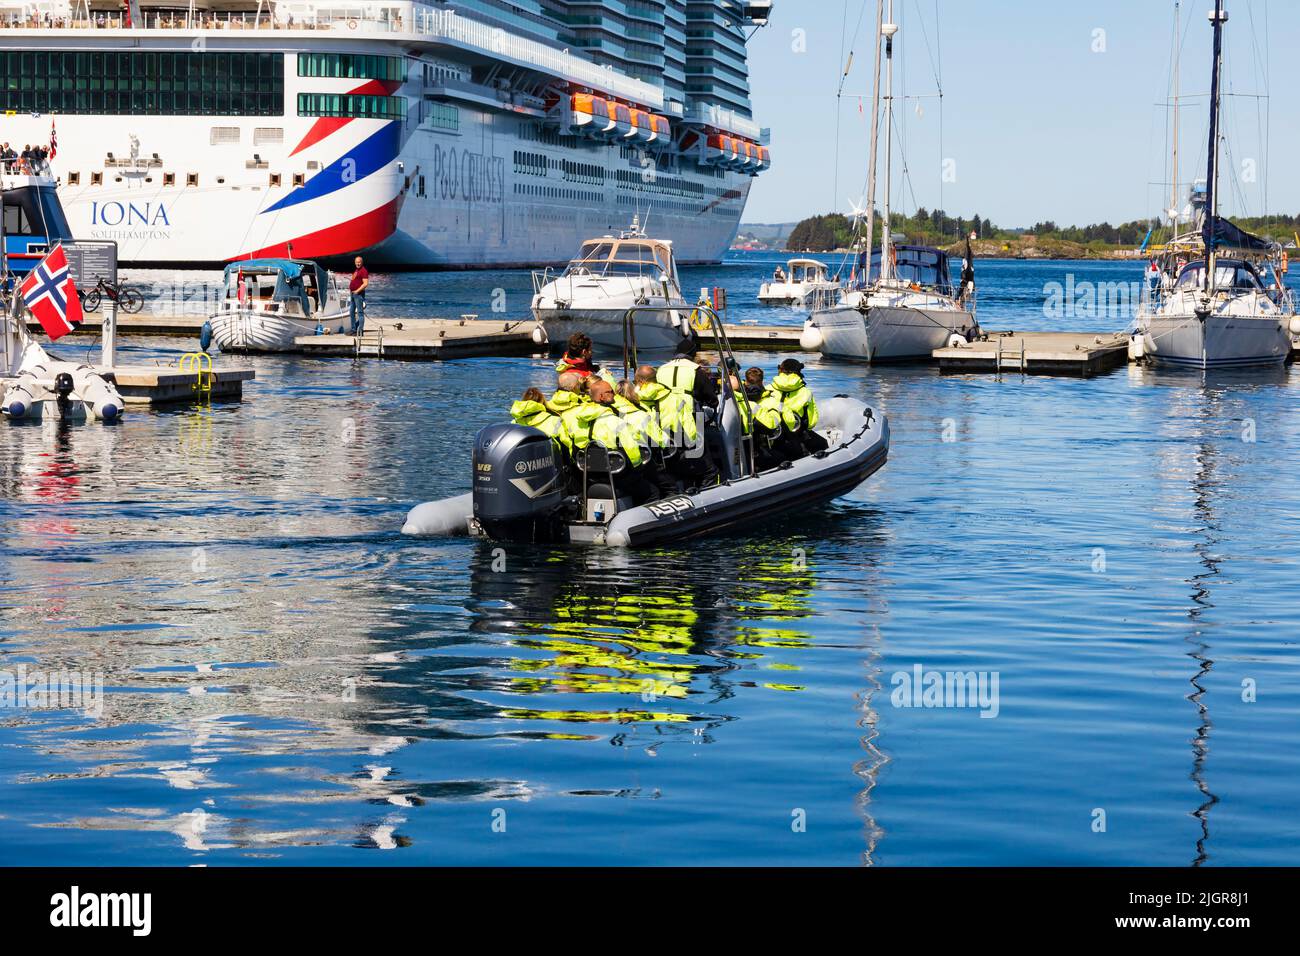 Touristen-Schrillensuchende an Bord eines starren Raiders auf dem Weg zu den Fjorden. P&O-Schiff MS Iona, Stavanger, Norwegen. Stockfoto